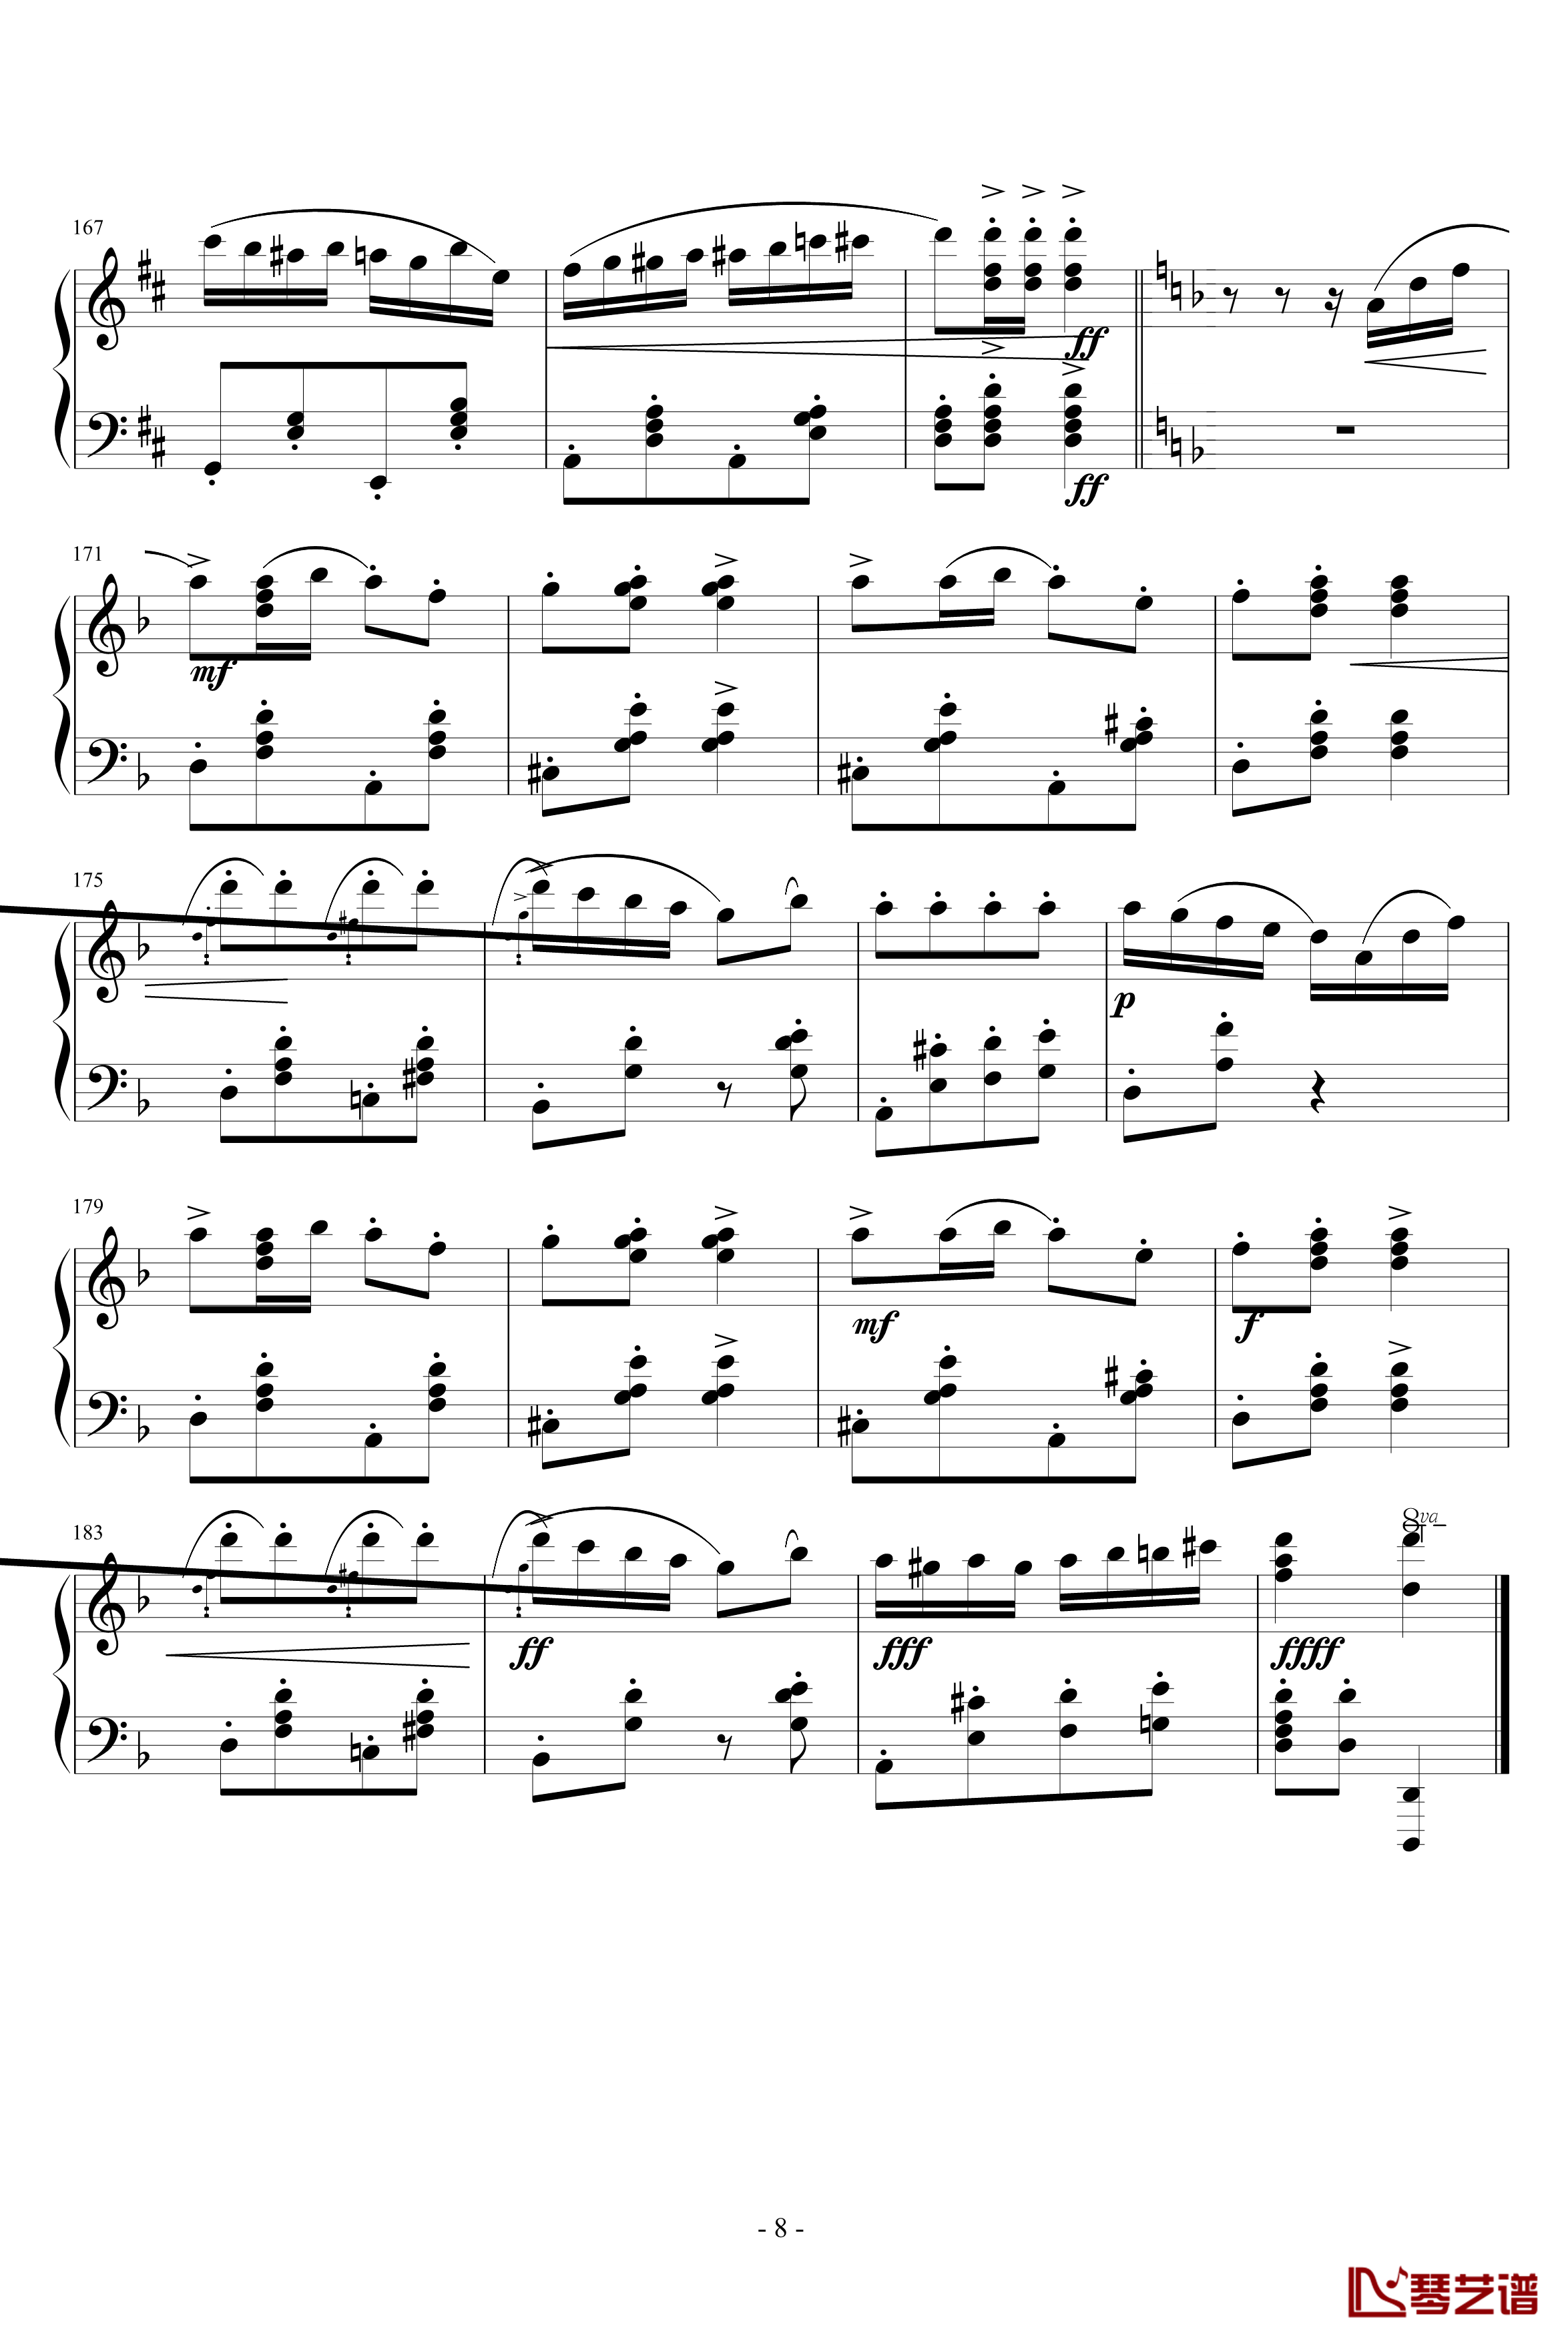 意大利波尔卡钢琴谱-拉赫马尼若夫8